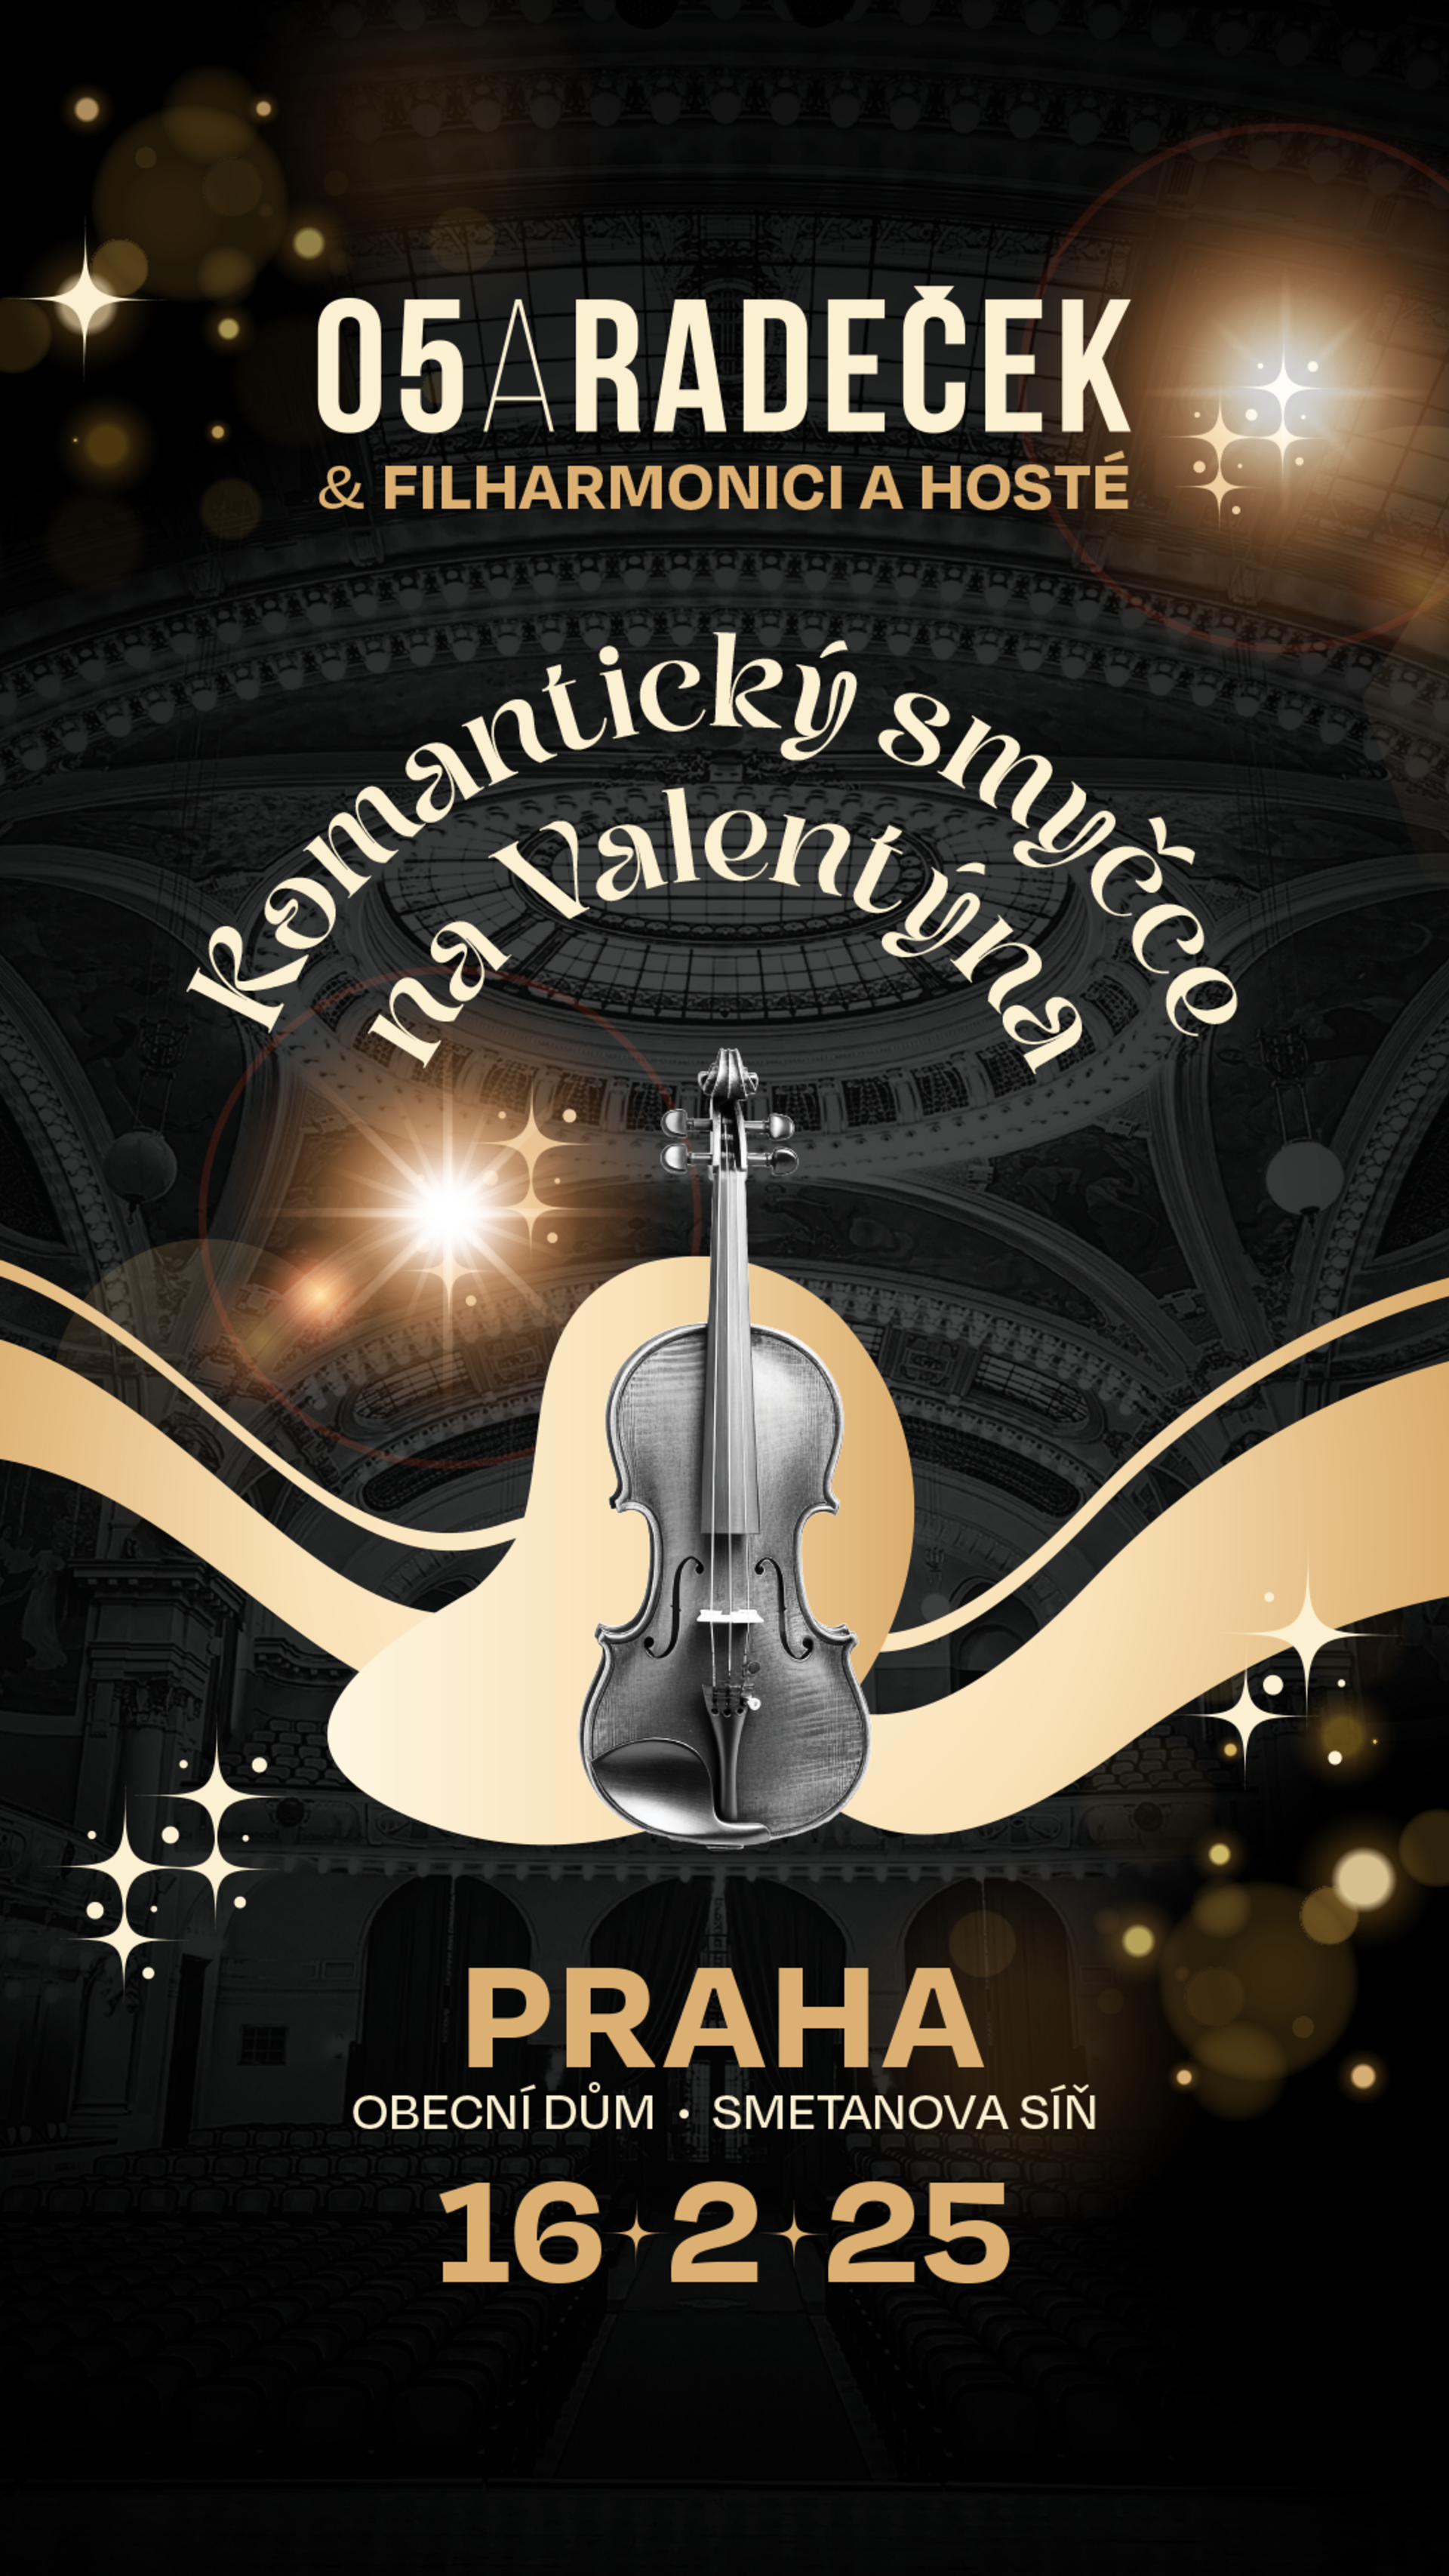 O5 a Radeček chystají valentýnský koncert s filharmoniky.